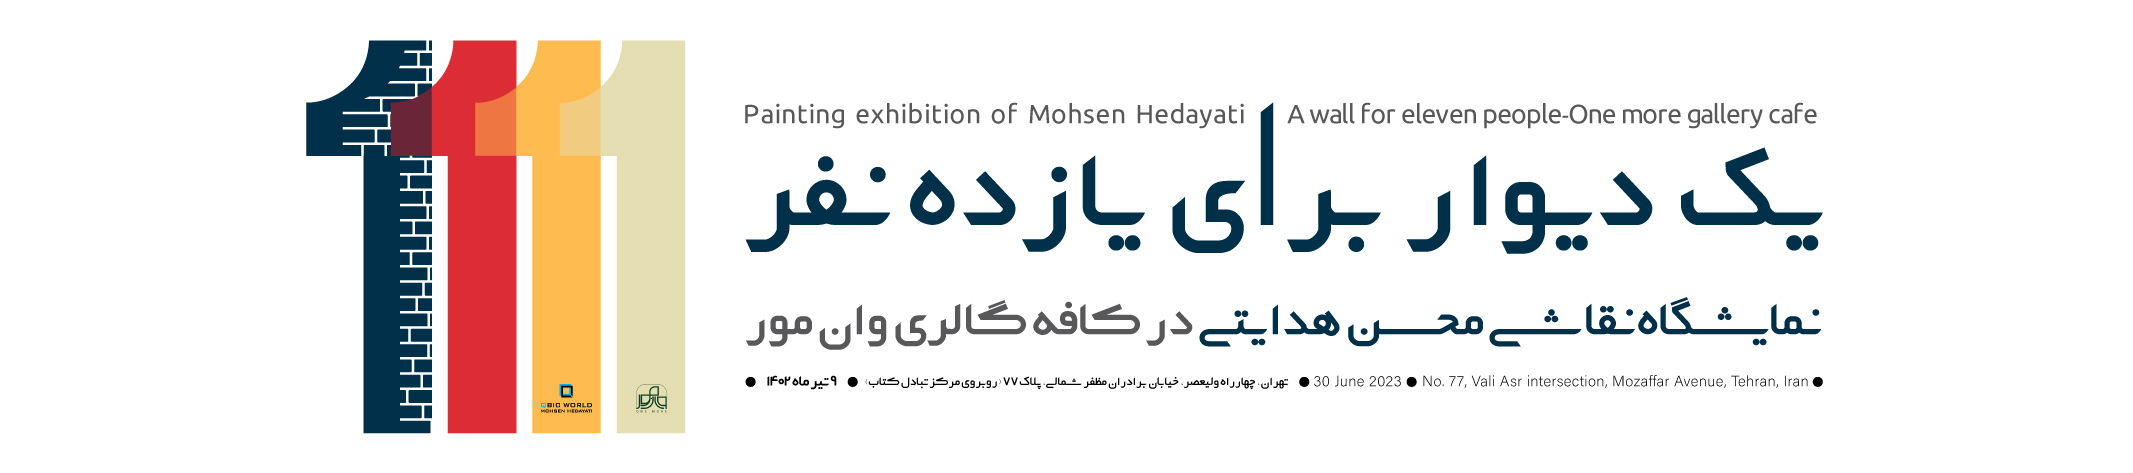 نمایشگاه نقاشی محسن هدایتی با عنوان یک دیوار برای یازده نفر در کافه گالری وان مور